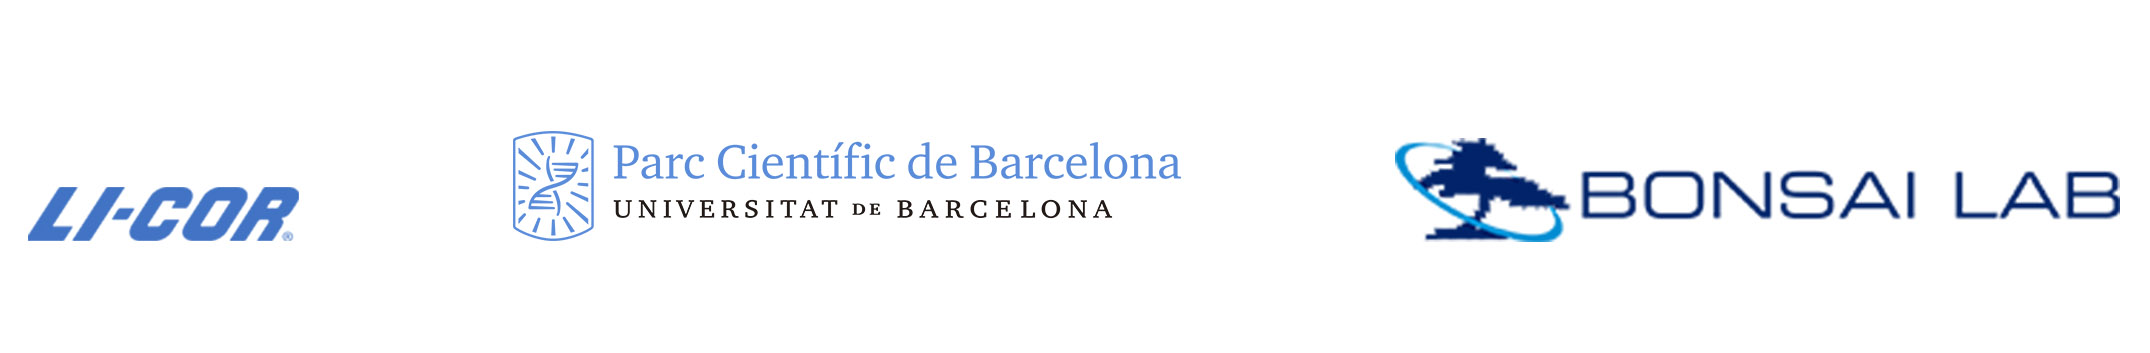 Logos de Li-cor, Parc Cientific de Barcelona y Bonsai Lab